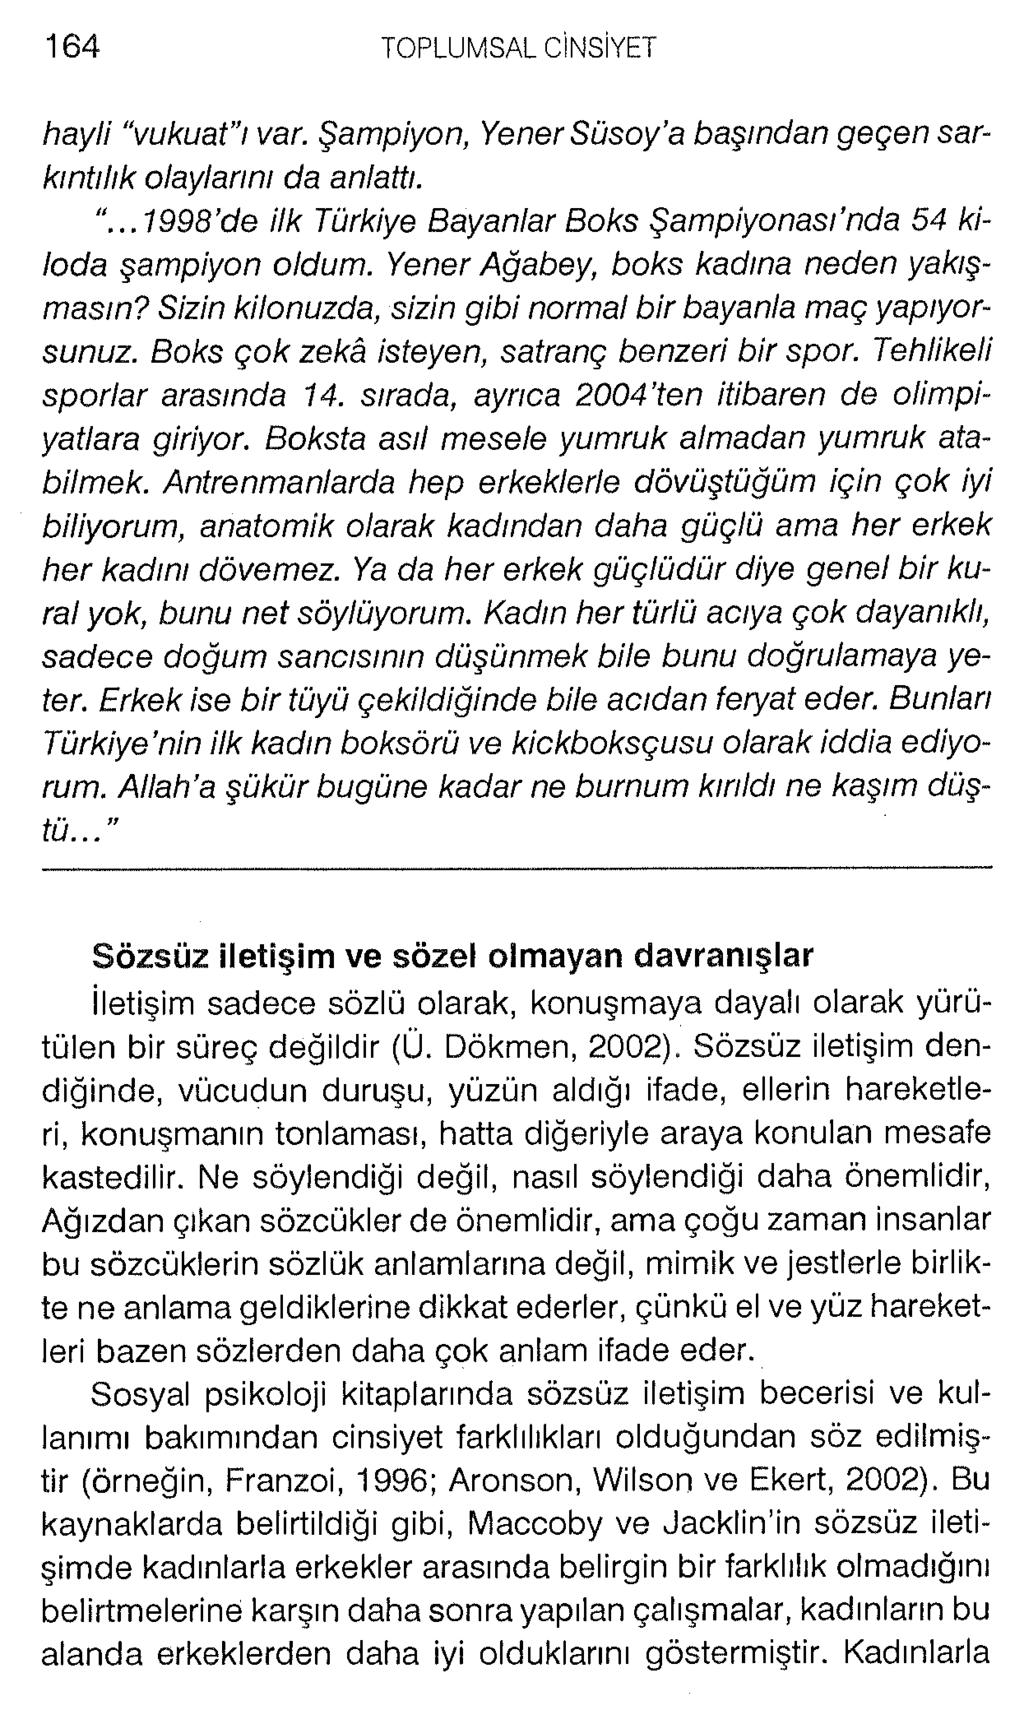 hayli vukuat ı var. Şampiyon, Yener Süsoy a başından geçen sarkıntılık olaylarını da anlattı....1998 de ilk Türkiye Bayanlar Boks Şampiyonası nda 54 kiloda şampiyon oldum.